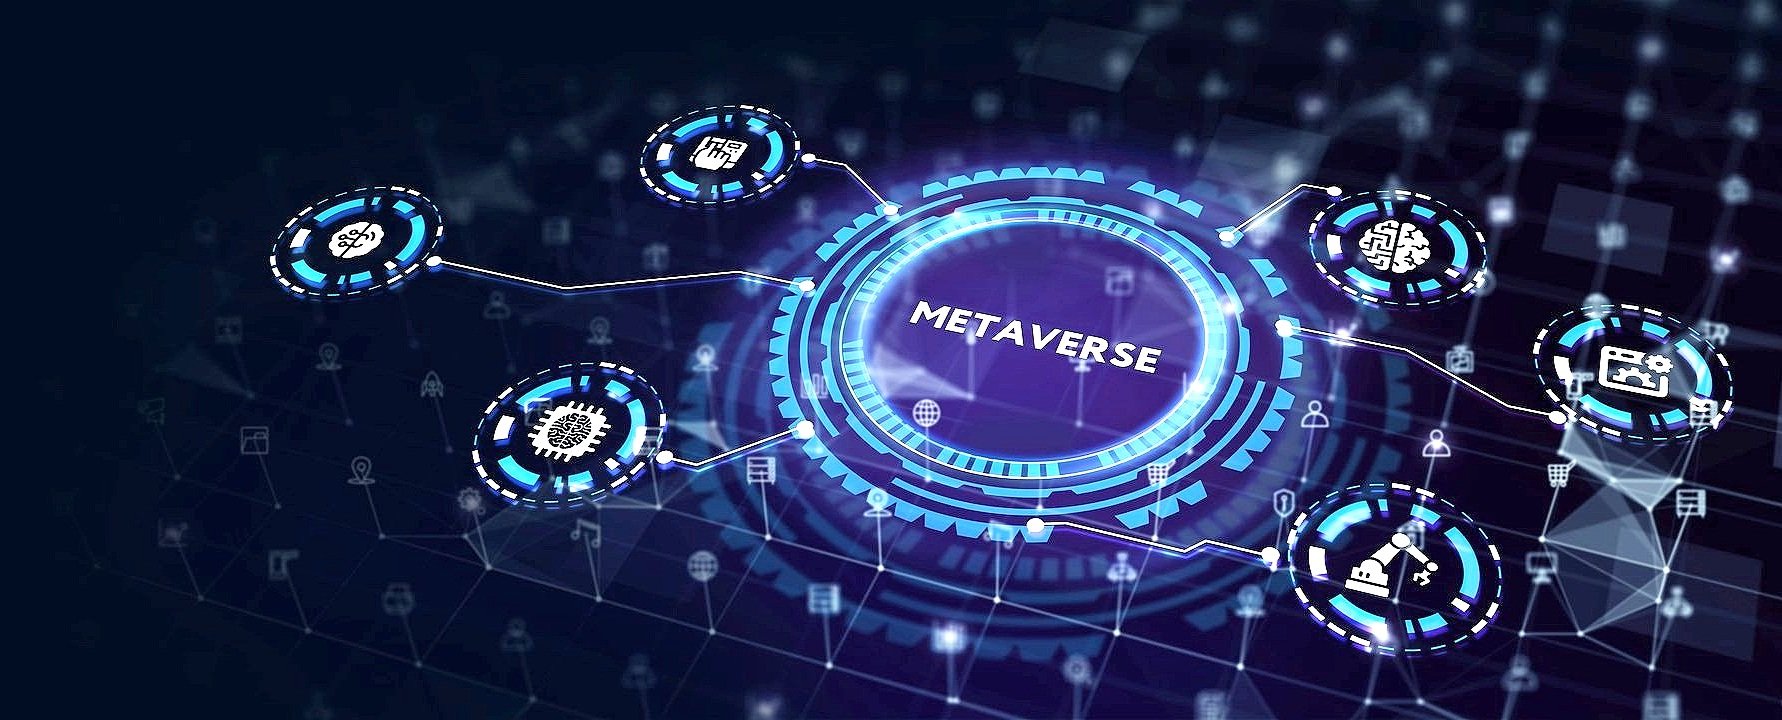 这张图片展示了一个以“METAVERSE”为核心的数字图形，周围是连接的各种科技和社交媒体符号，体现了元宇宙的概念。